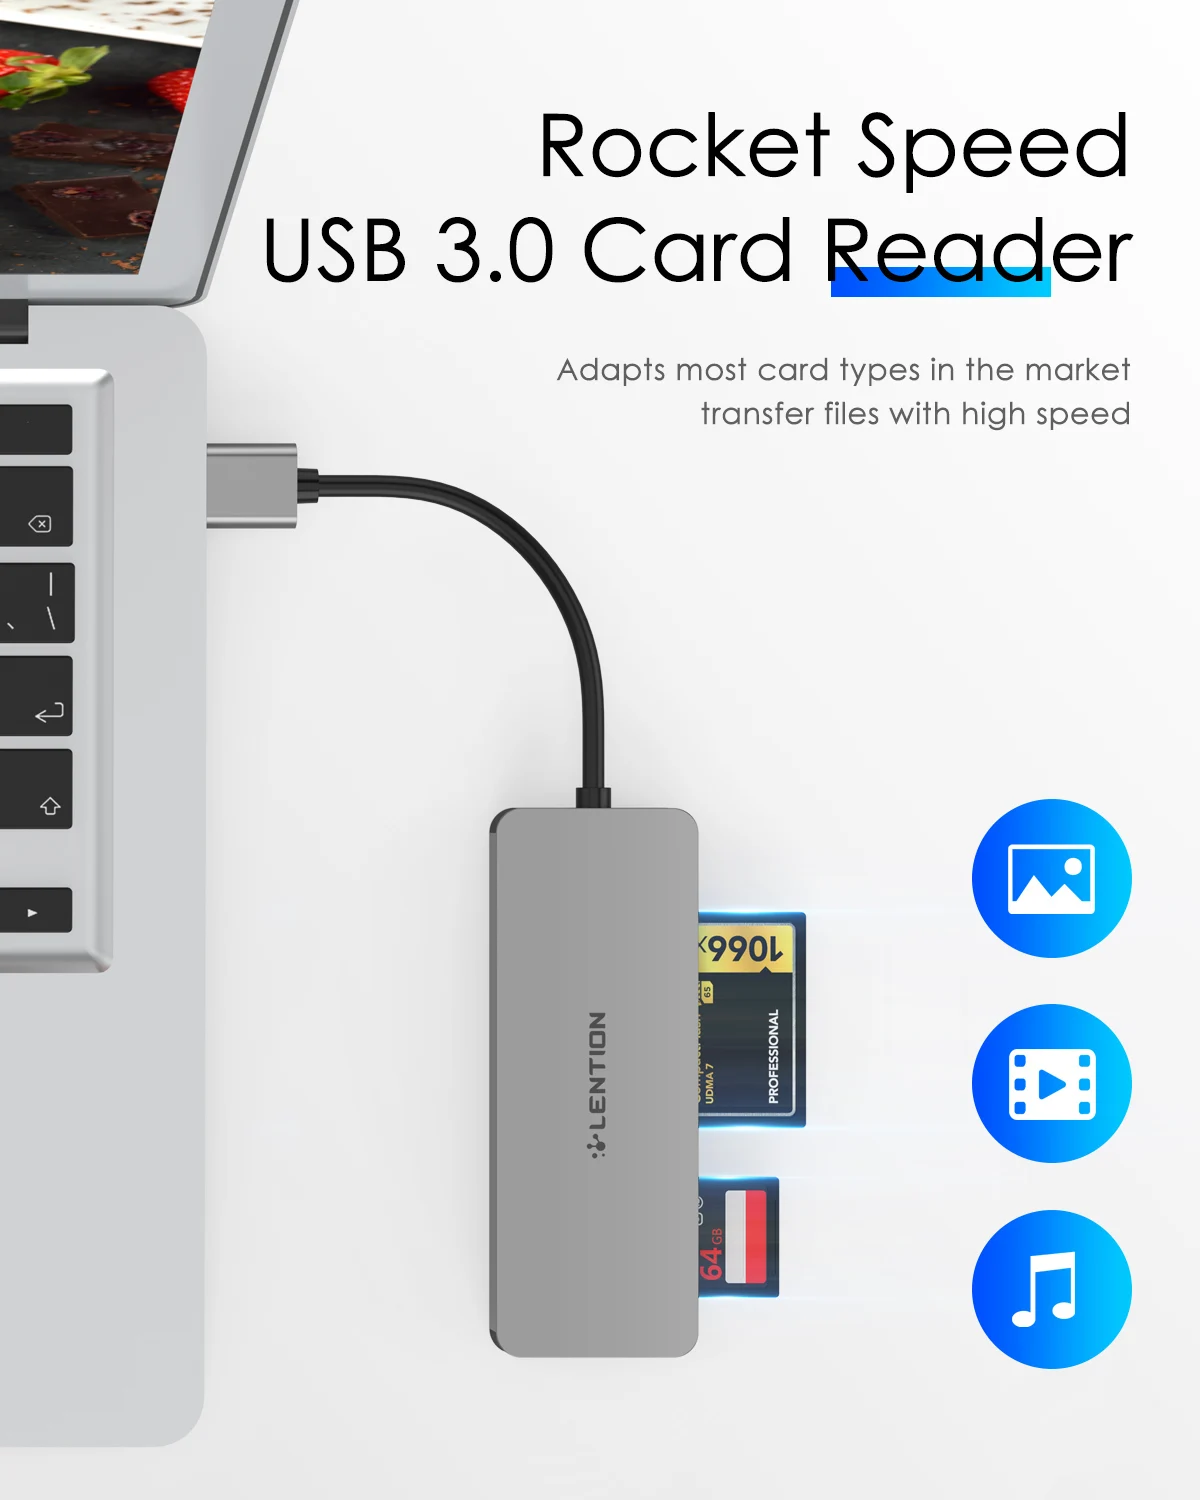 USB 3.0 pentru a CF/SD/Micro Cititor de Card SD, SD 3.0 Adaptor de Card pentru SD/SDHC/SDXC/MMC/RS-MMC/Micro SD/Micro SDHC/Micro SDXC/CF Tip I